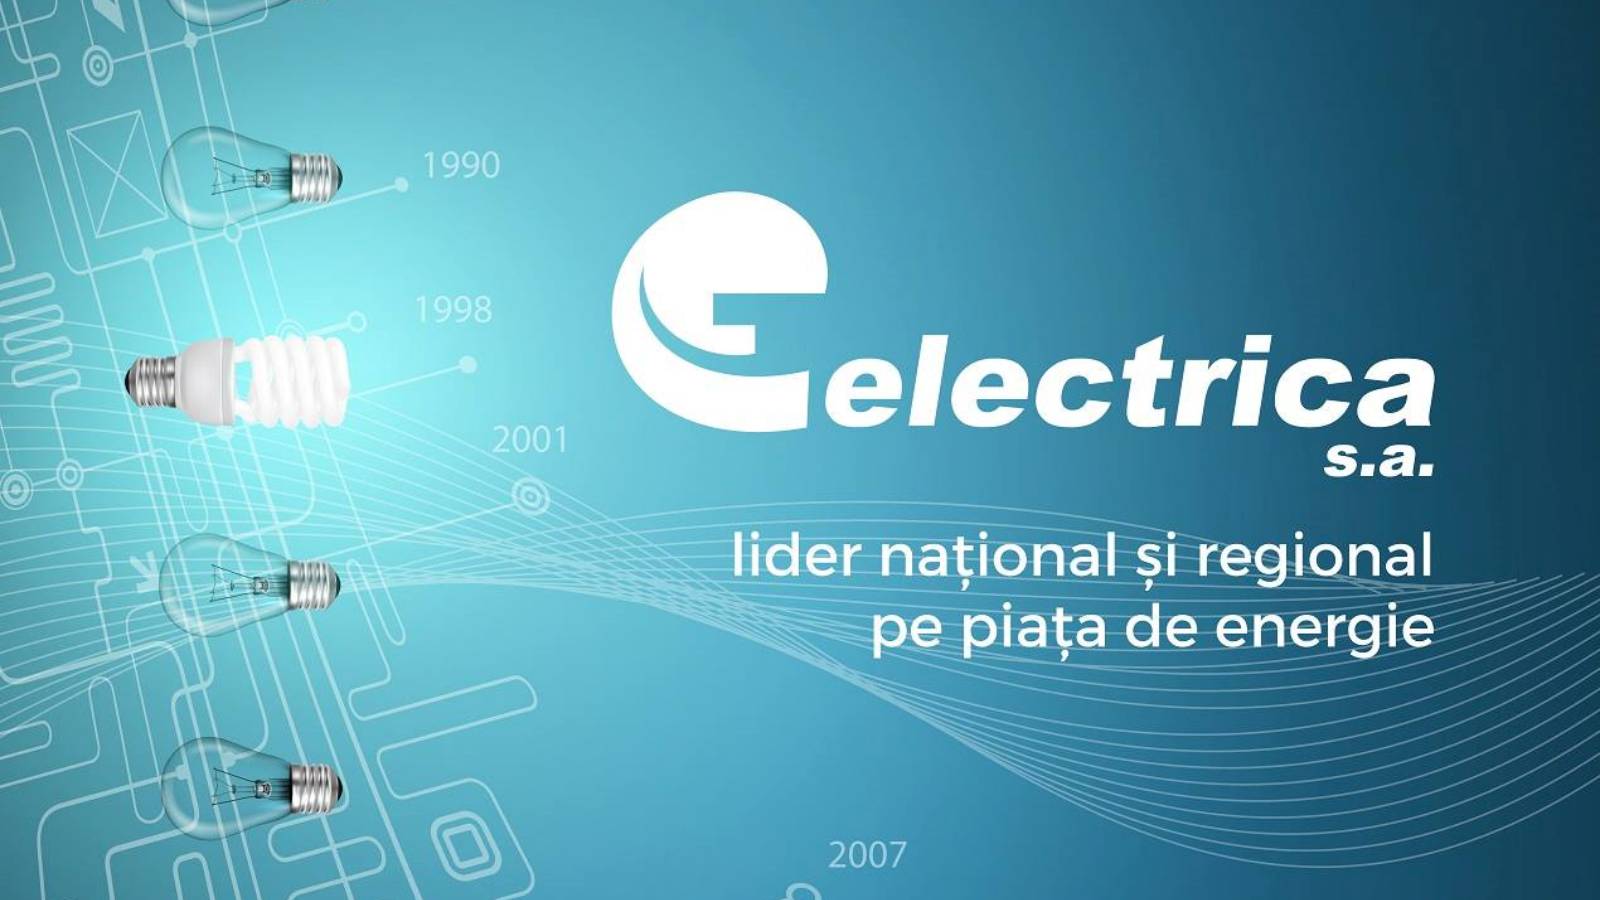 LAST MINUTE ELECTRICA officielle remarque l'attention de millions de clients roumains